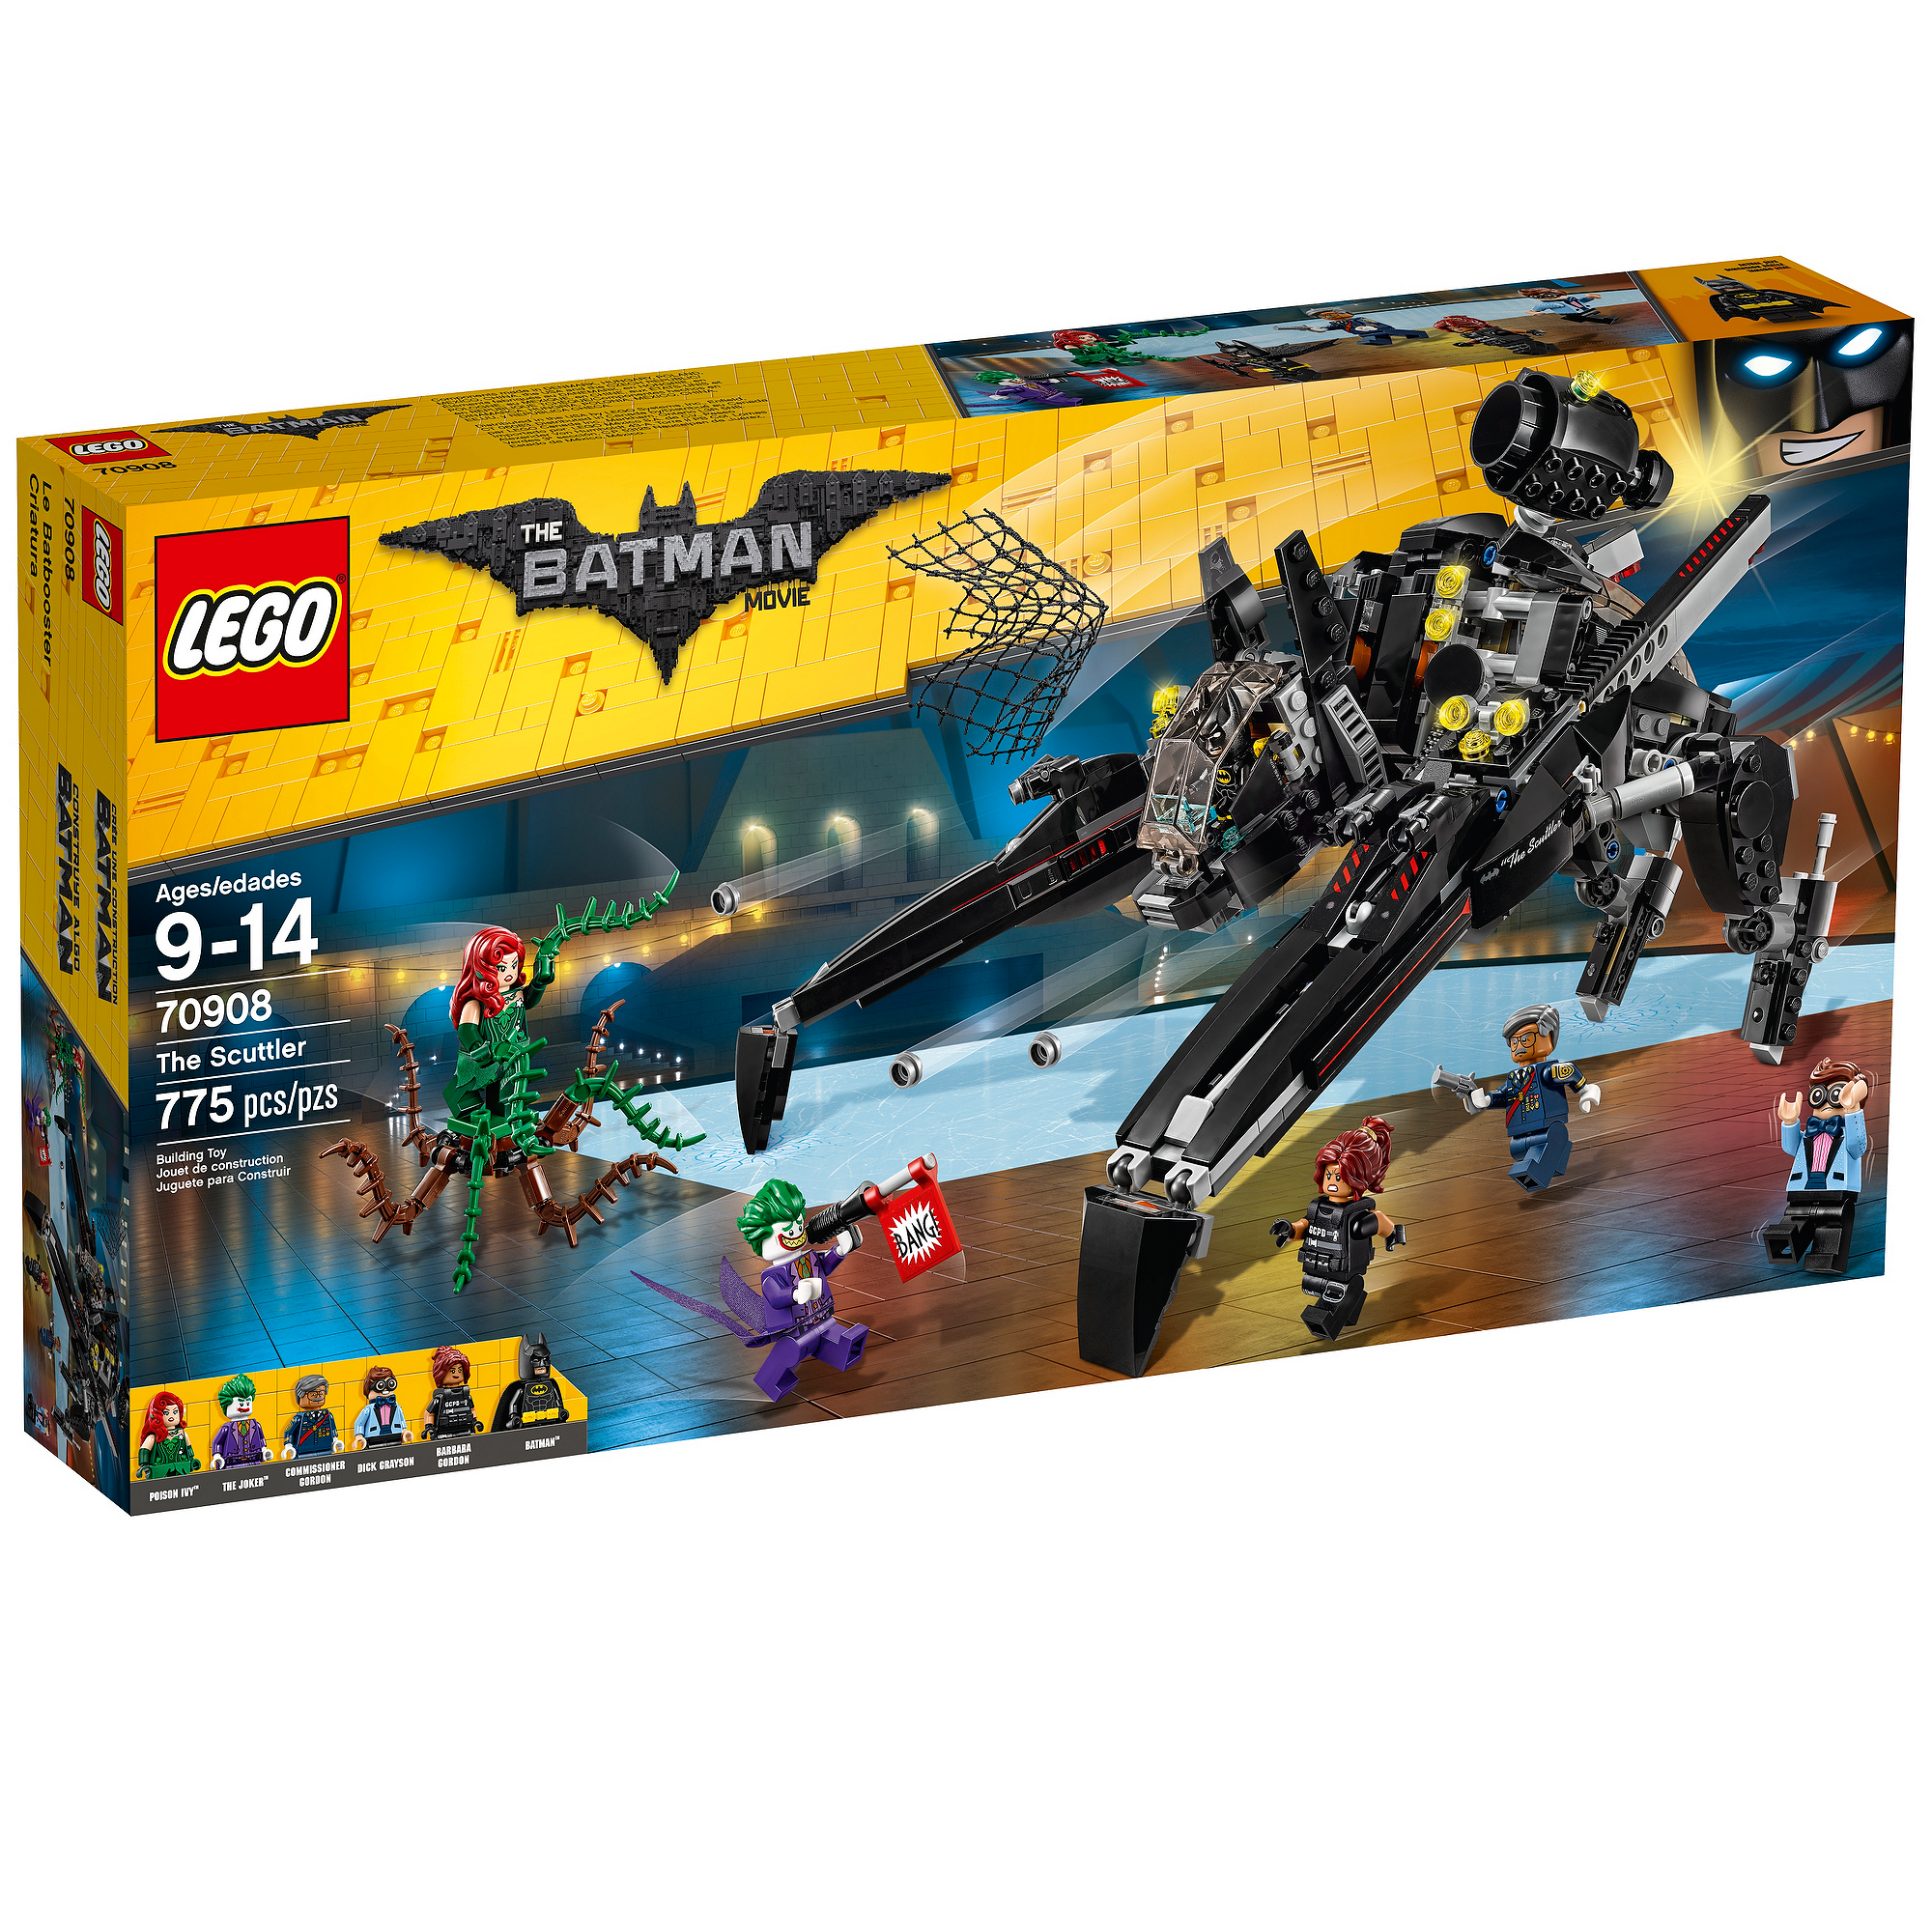 GENUINE LEGO DC 70908 POISON IVY MINIFIGURE BATMAN SUPERHEROES EXCLUSIVE 